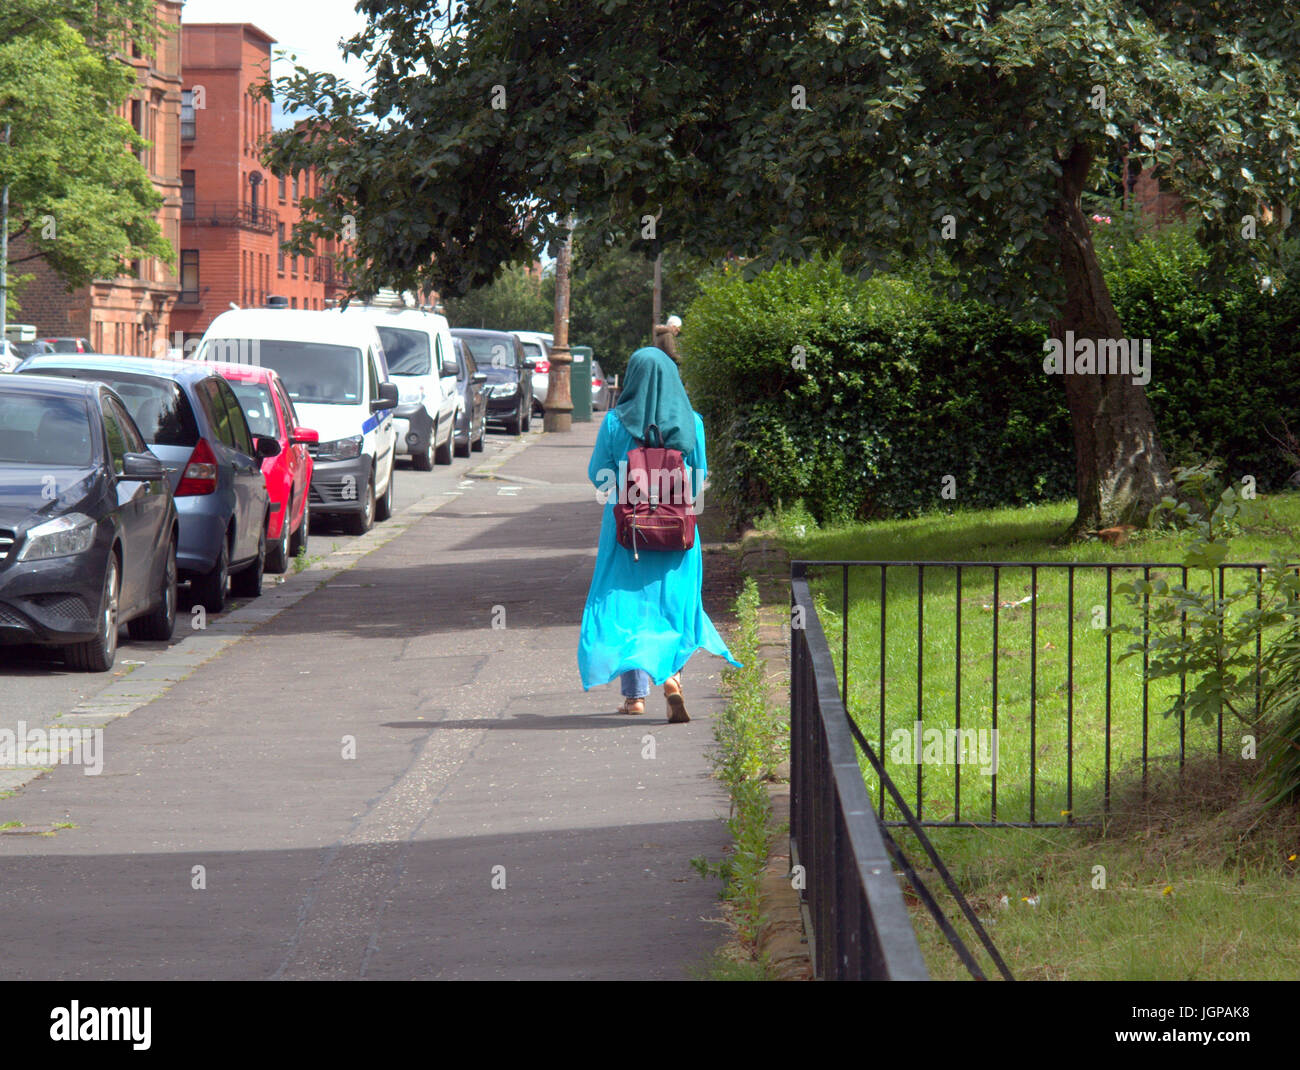 Asiatische Familie Flüchtling junge Frau Mädchen Schüler Schüler gekleidet Hijab Schal auf Straße in der UK alltägliche Szene gehen auf der Straße Stockfoto